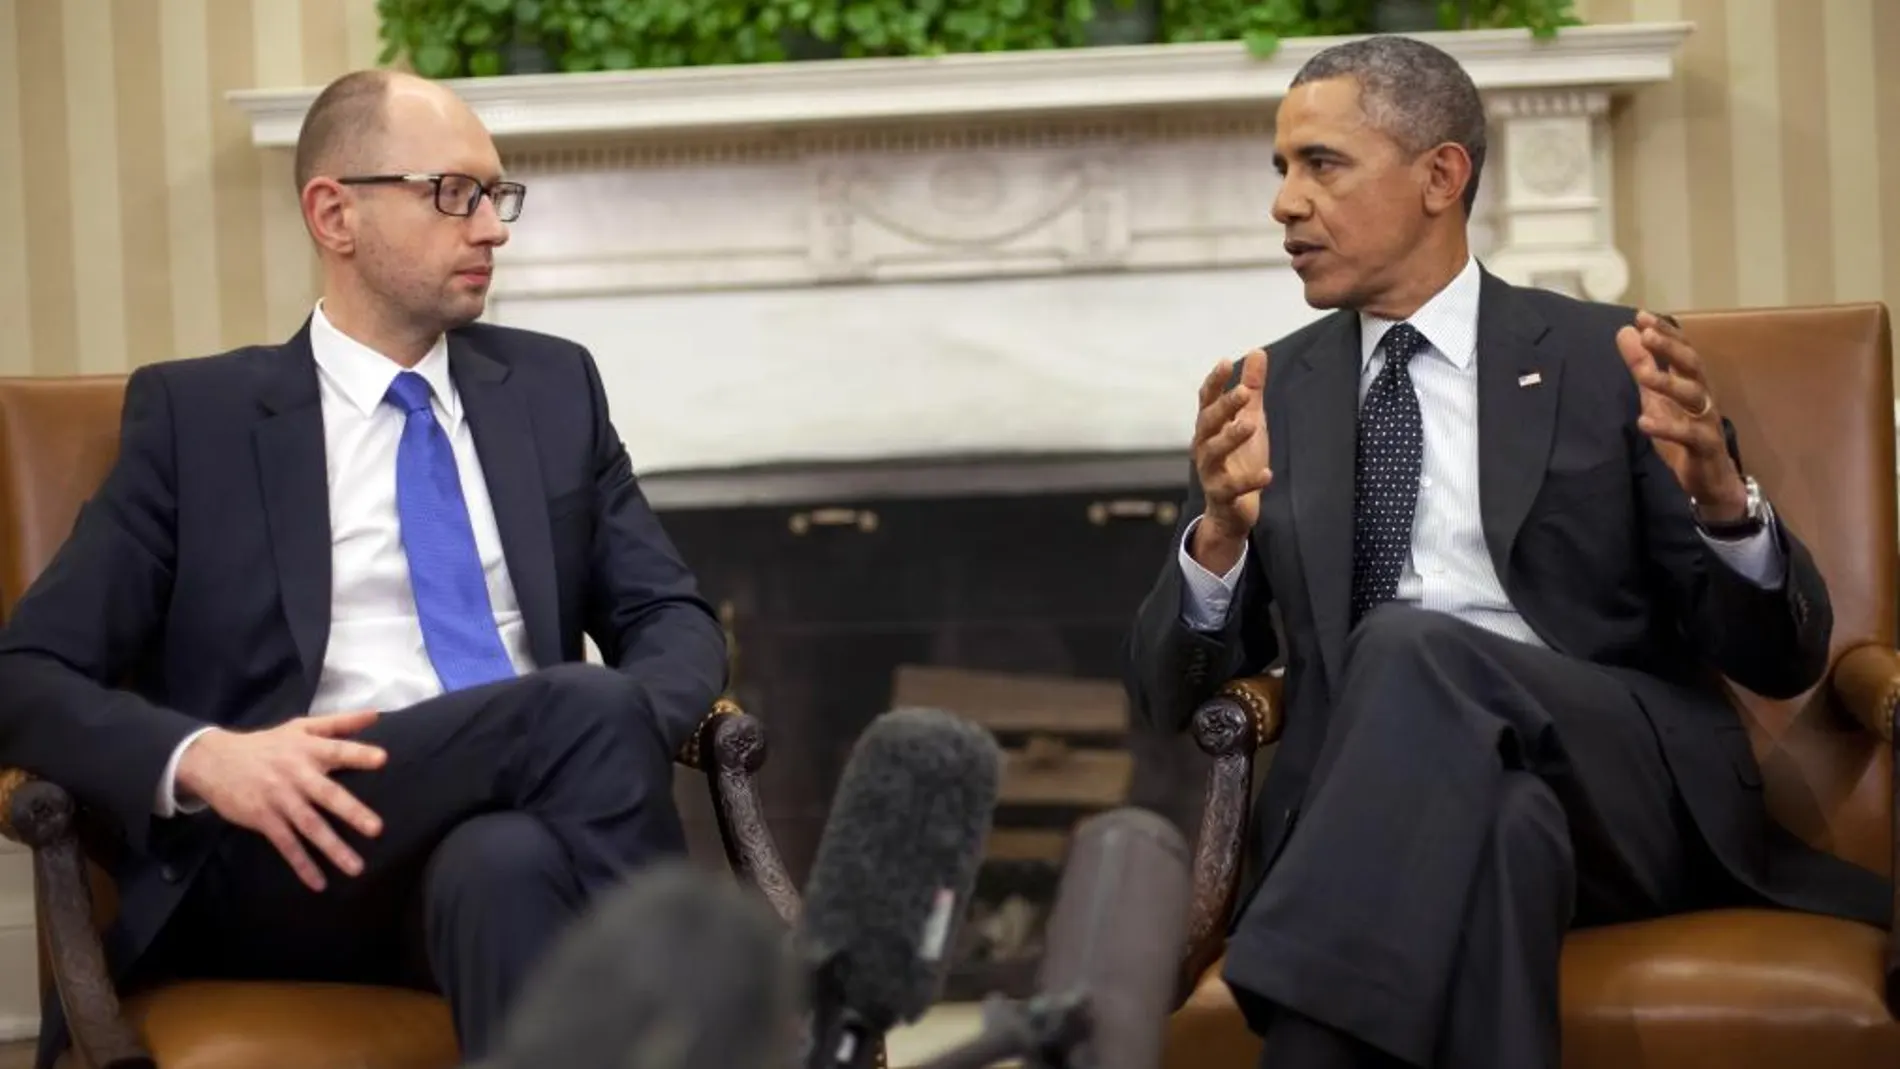 El presidente de Estados Unidos, Barack Obama, habla con el primer ministro de Ucrania, Arseniy Yatsenyuk, en el Despacho Oval.